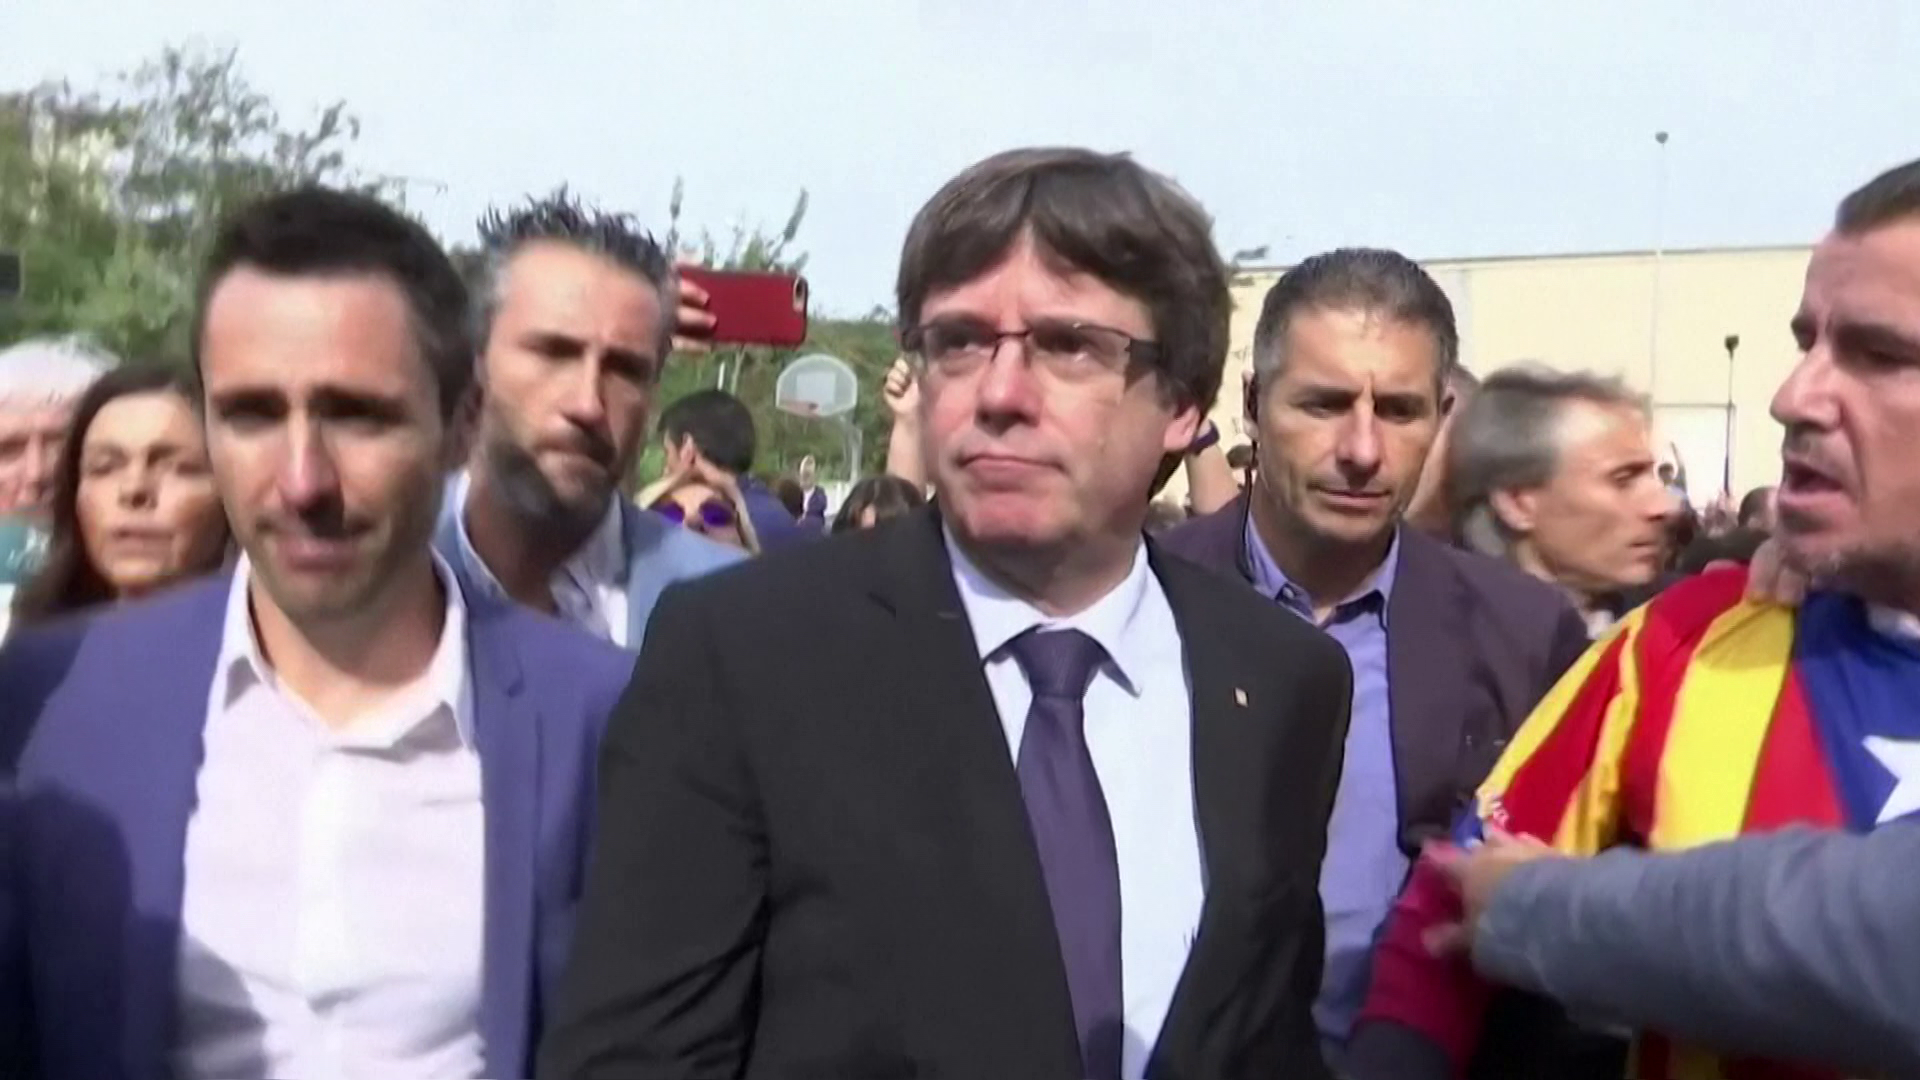 Olaszország nem adja ki Spanyolországnak Carles Puigdemont volt katalán elnököt 